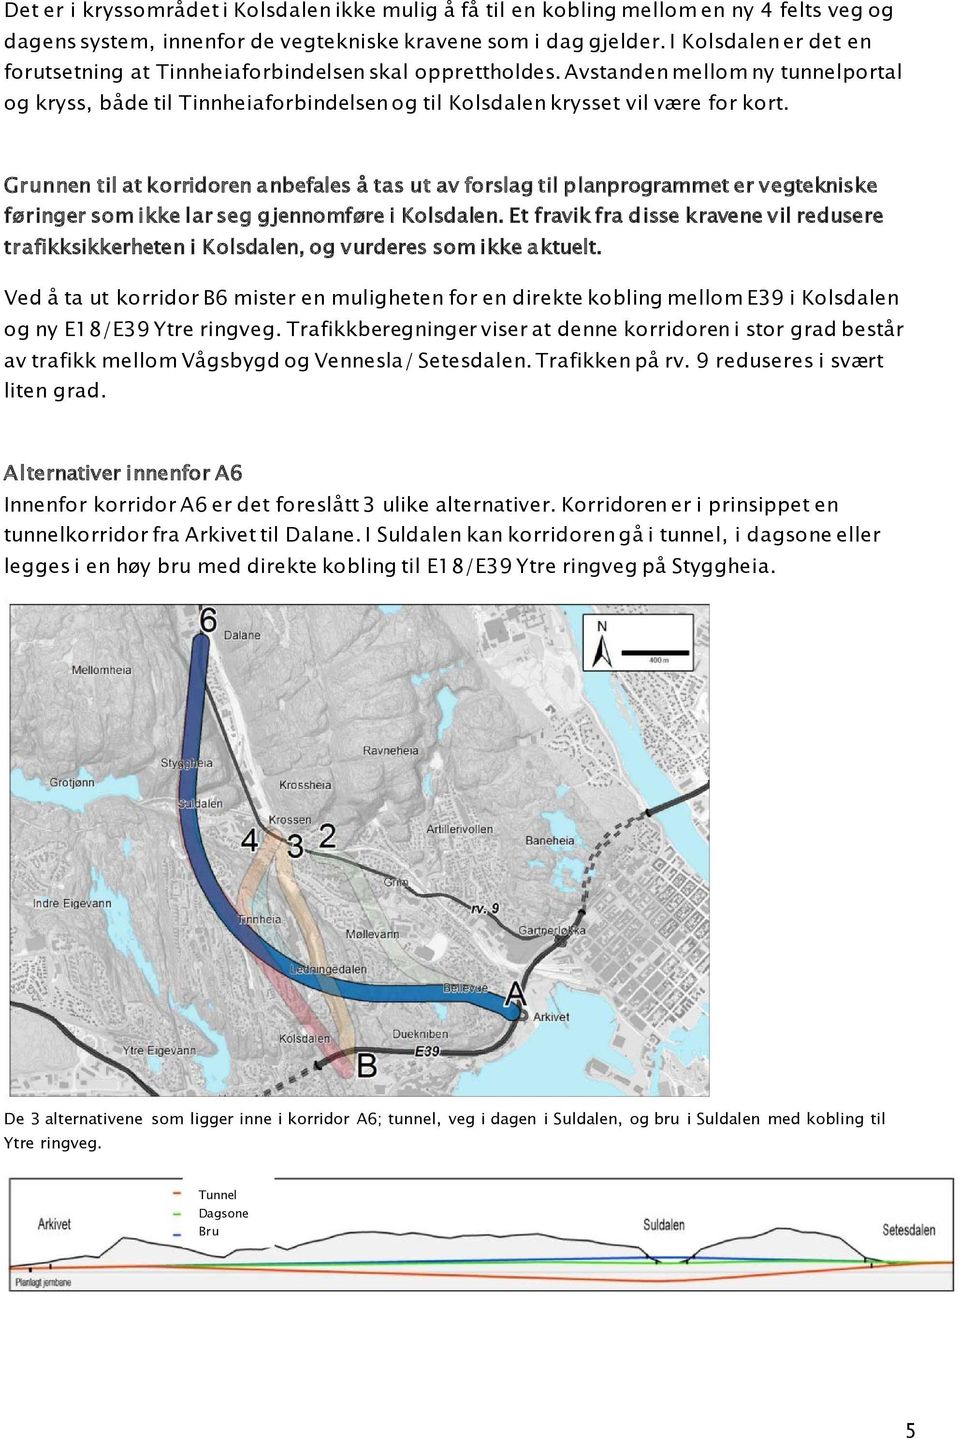 Grunnen til at korridoren anbefales å tas ut av forslag til planprogrammet er vegtekniske føringer som ikke lar seg gjennomføre i Kolsdalen.